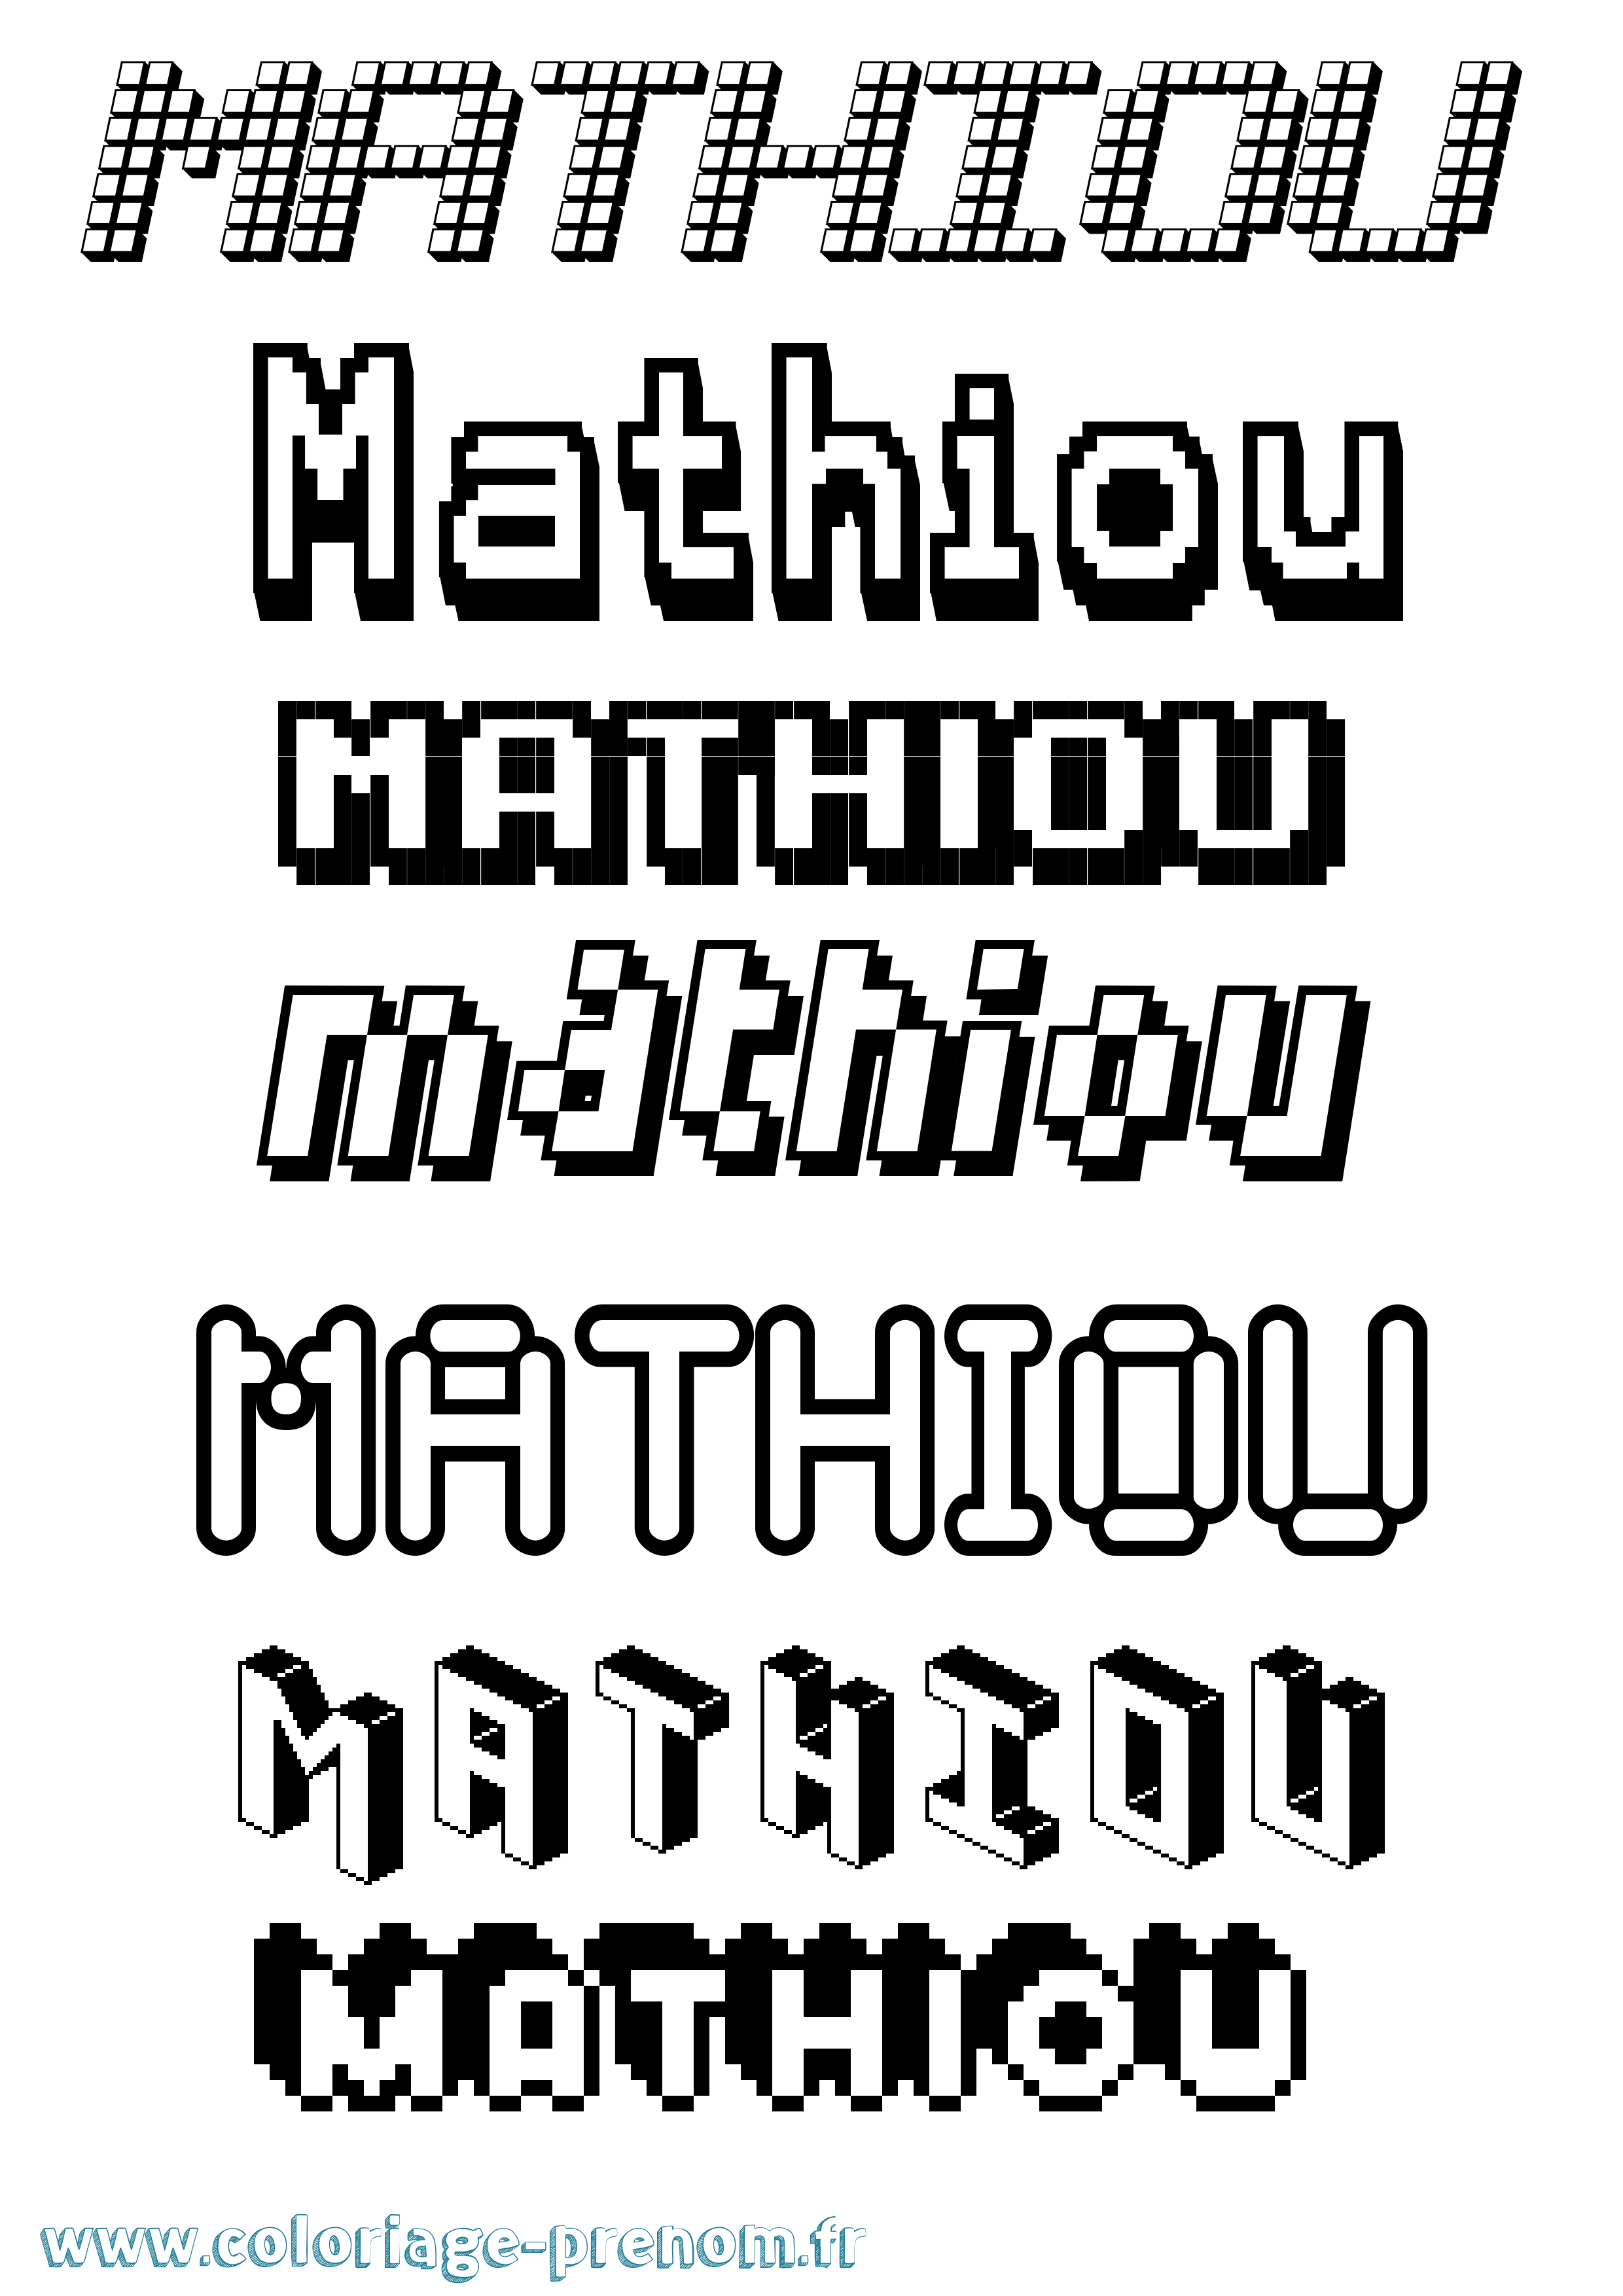 Coloriage prénom Mathiou Pixel